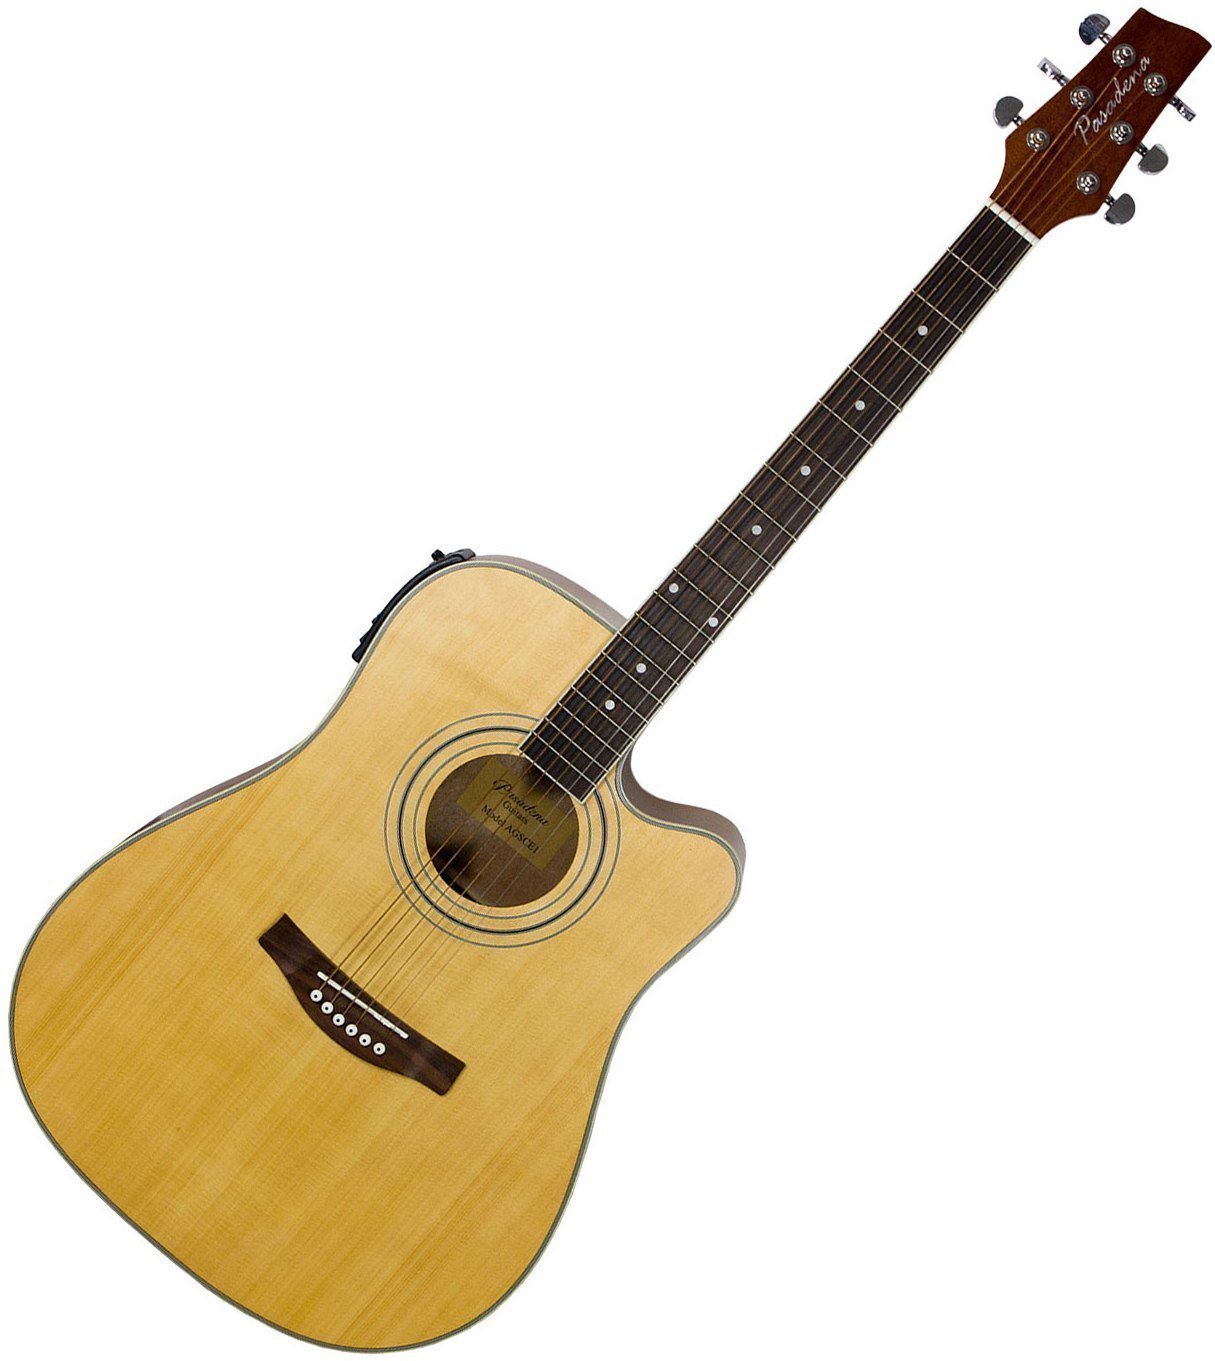 Dreadnought elektro-akoestische gitaar Pasadena AGSCE 1 Natural